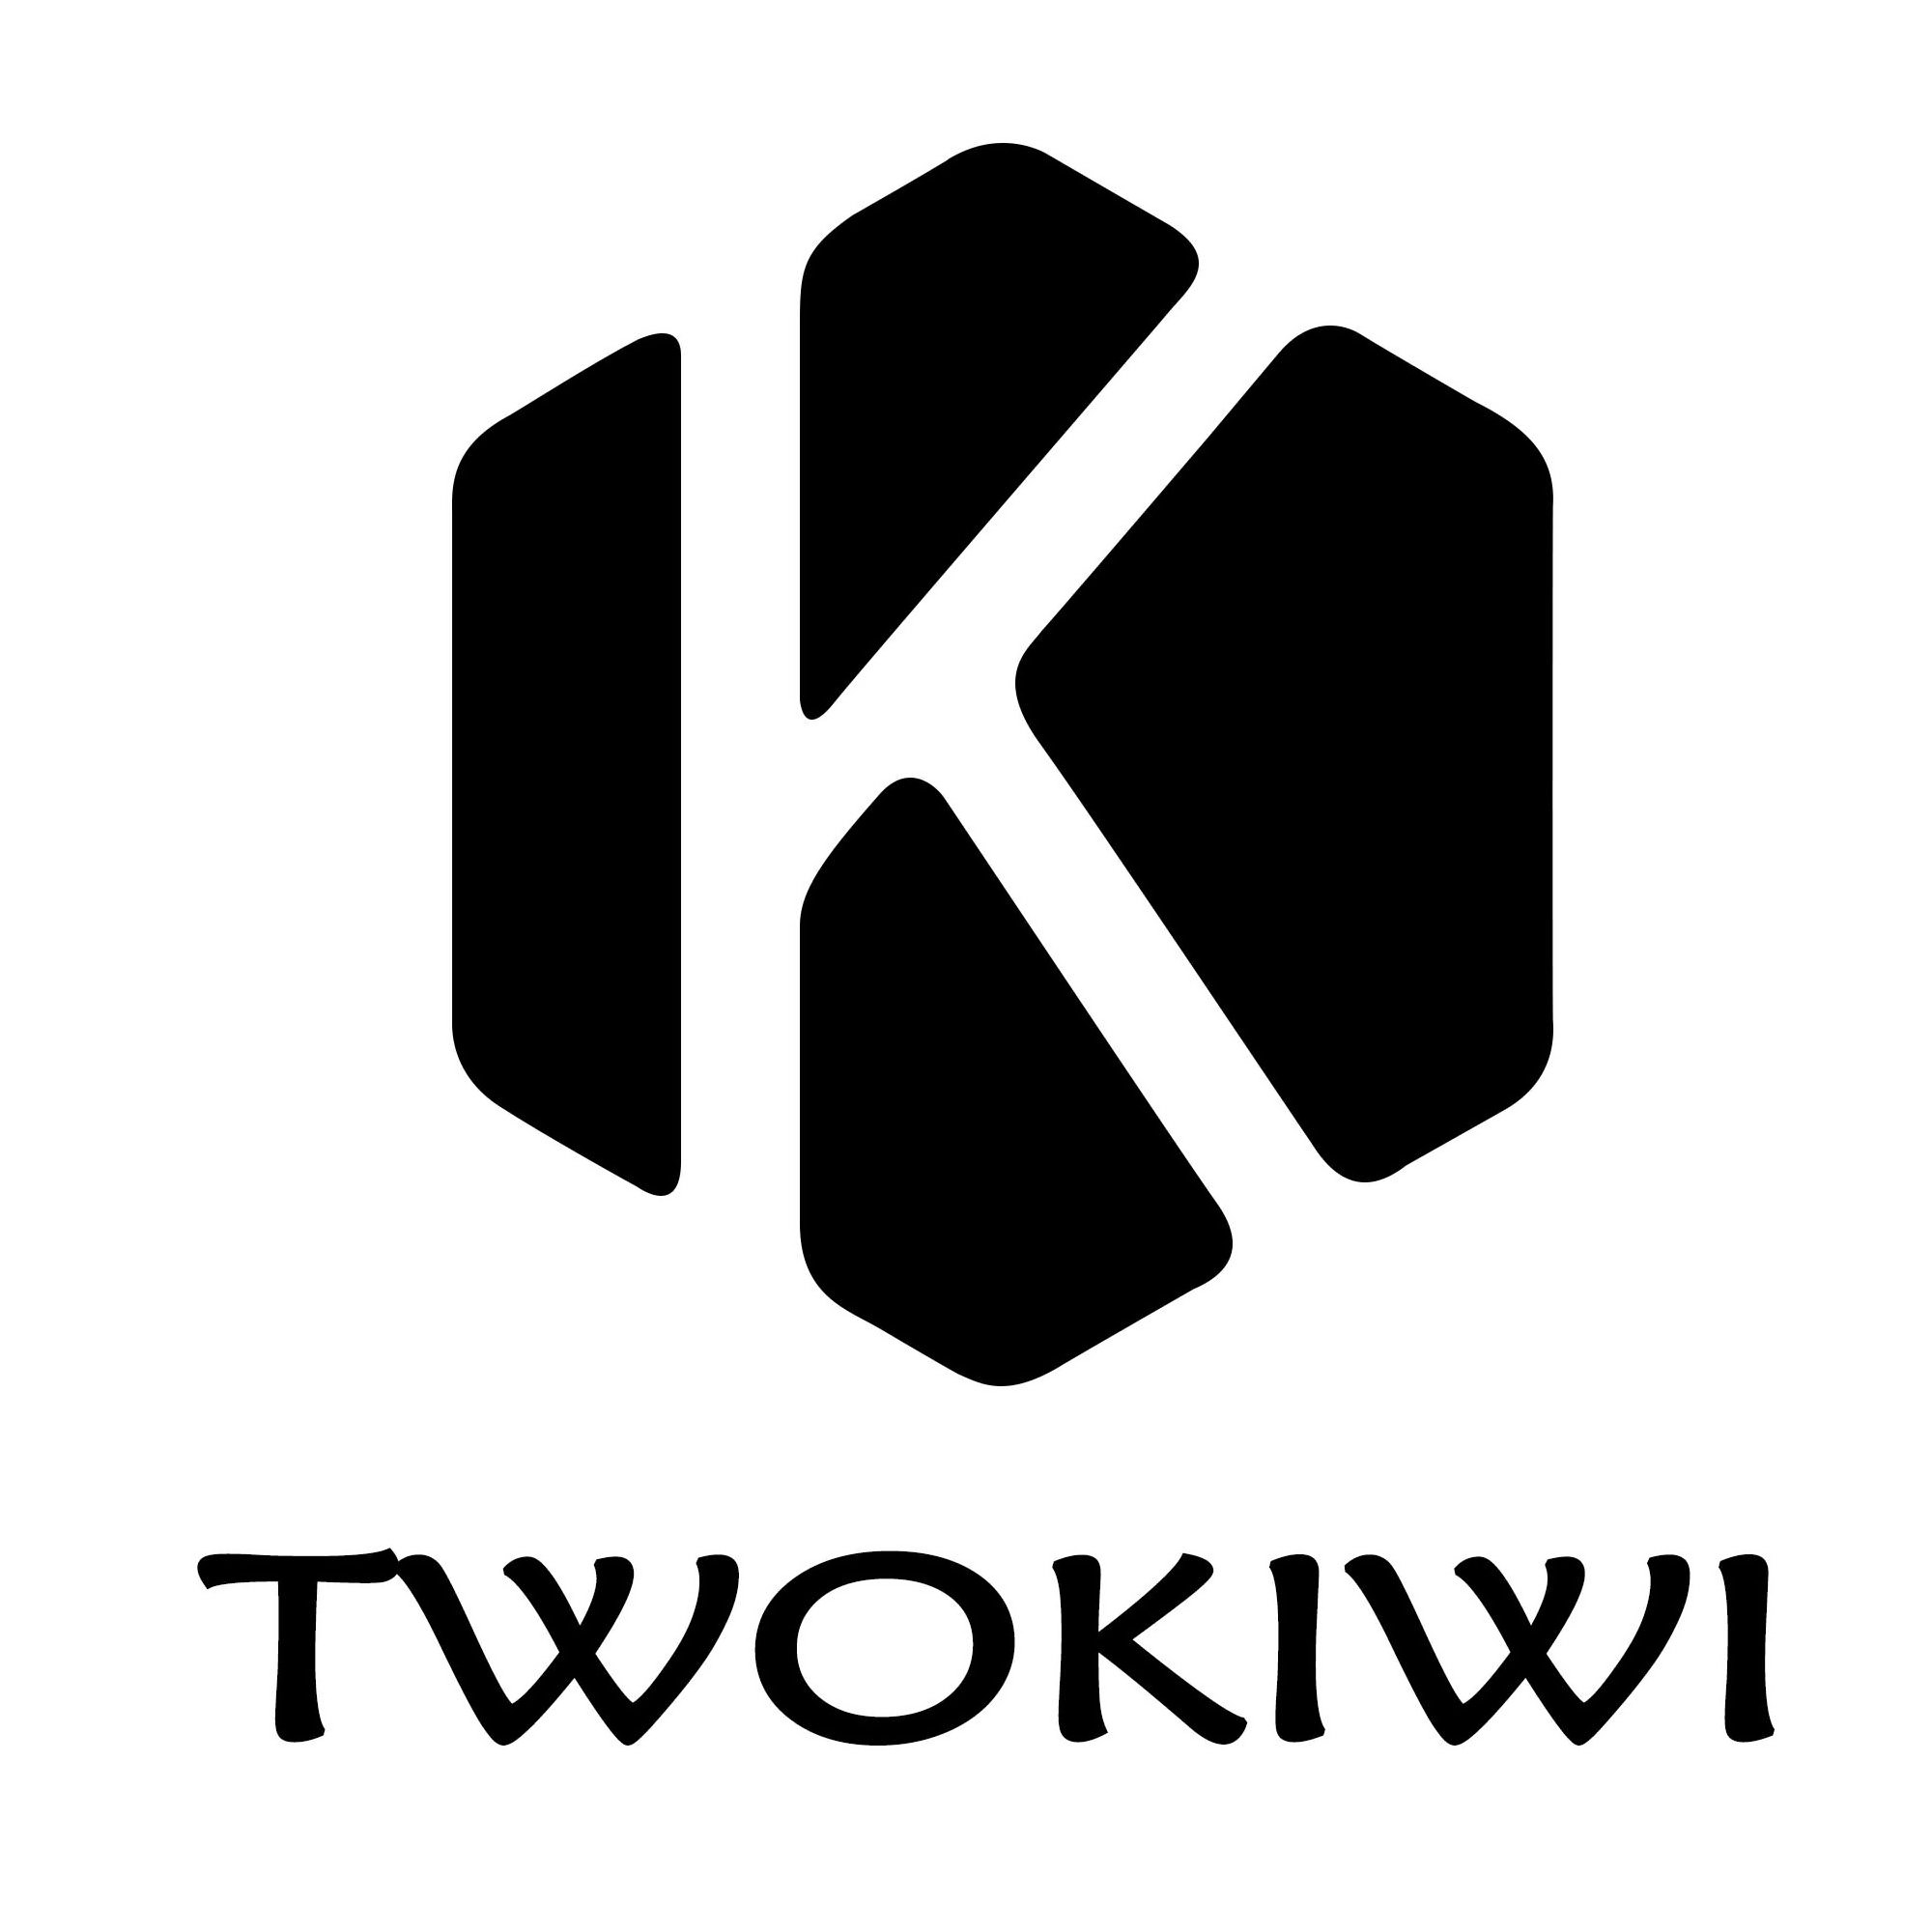  TWOKIWI